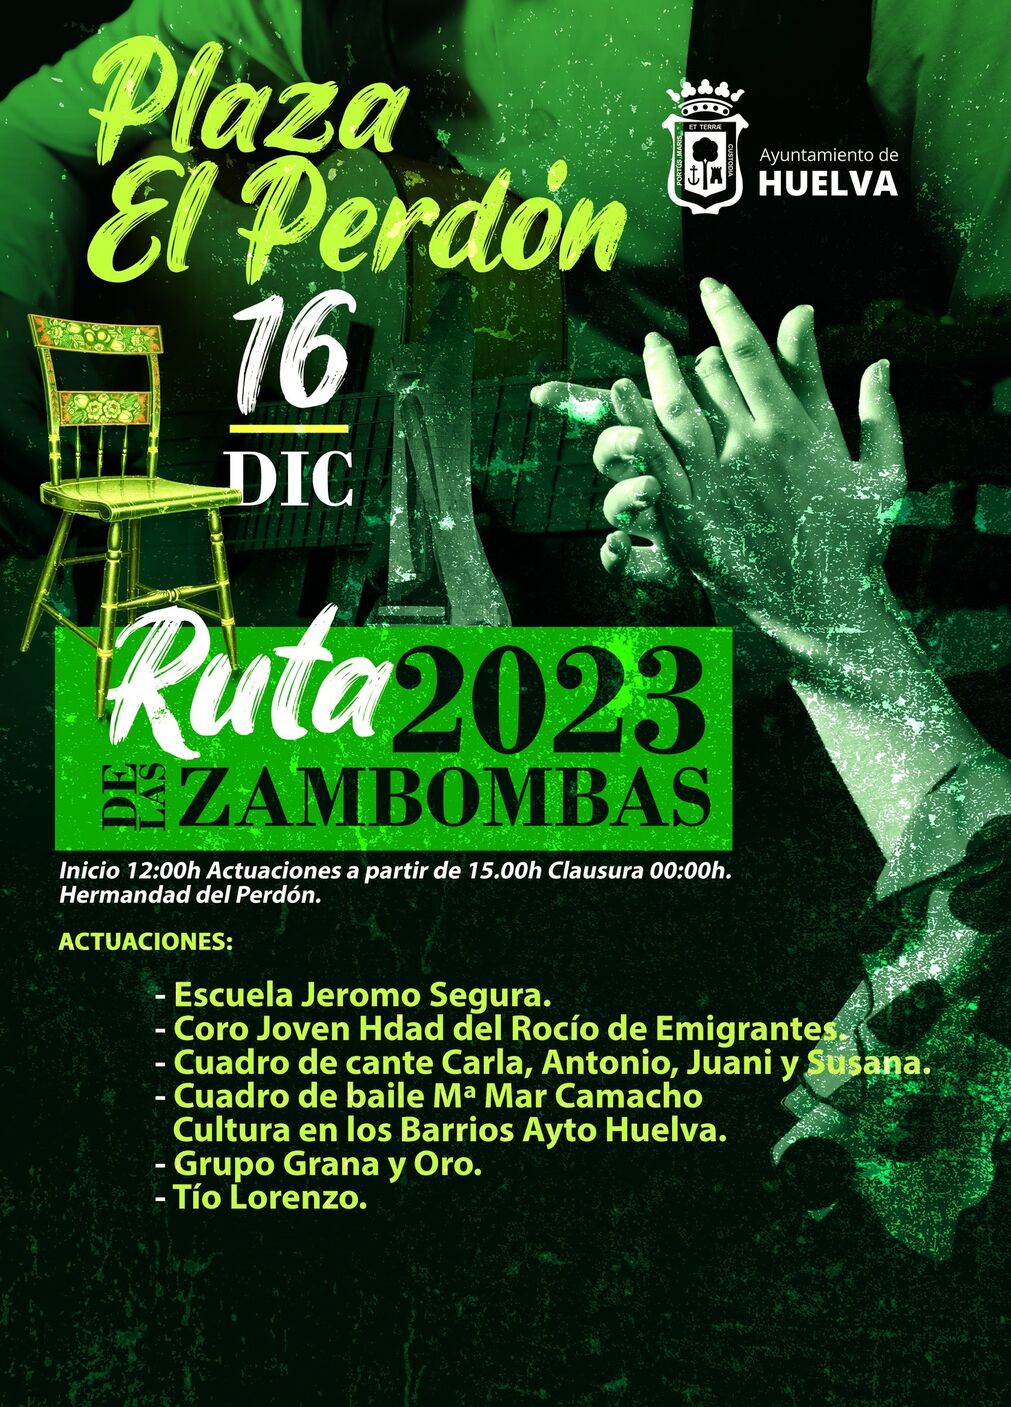 Zambomba de la Plaza El Perd&oacute;n